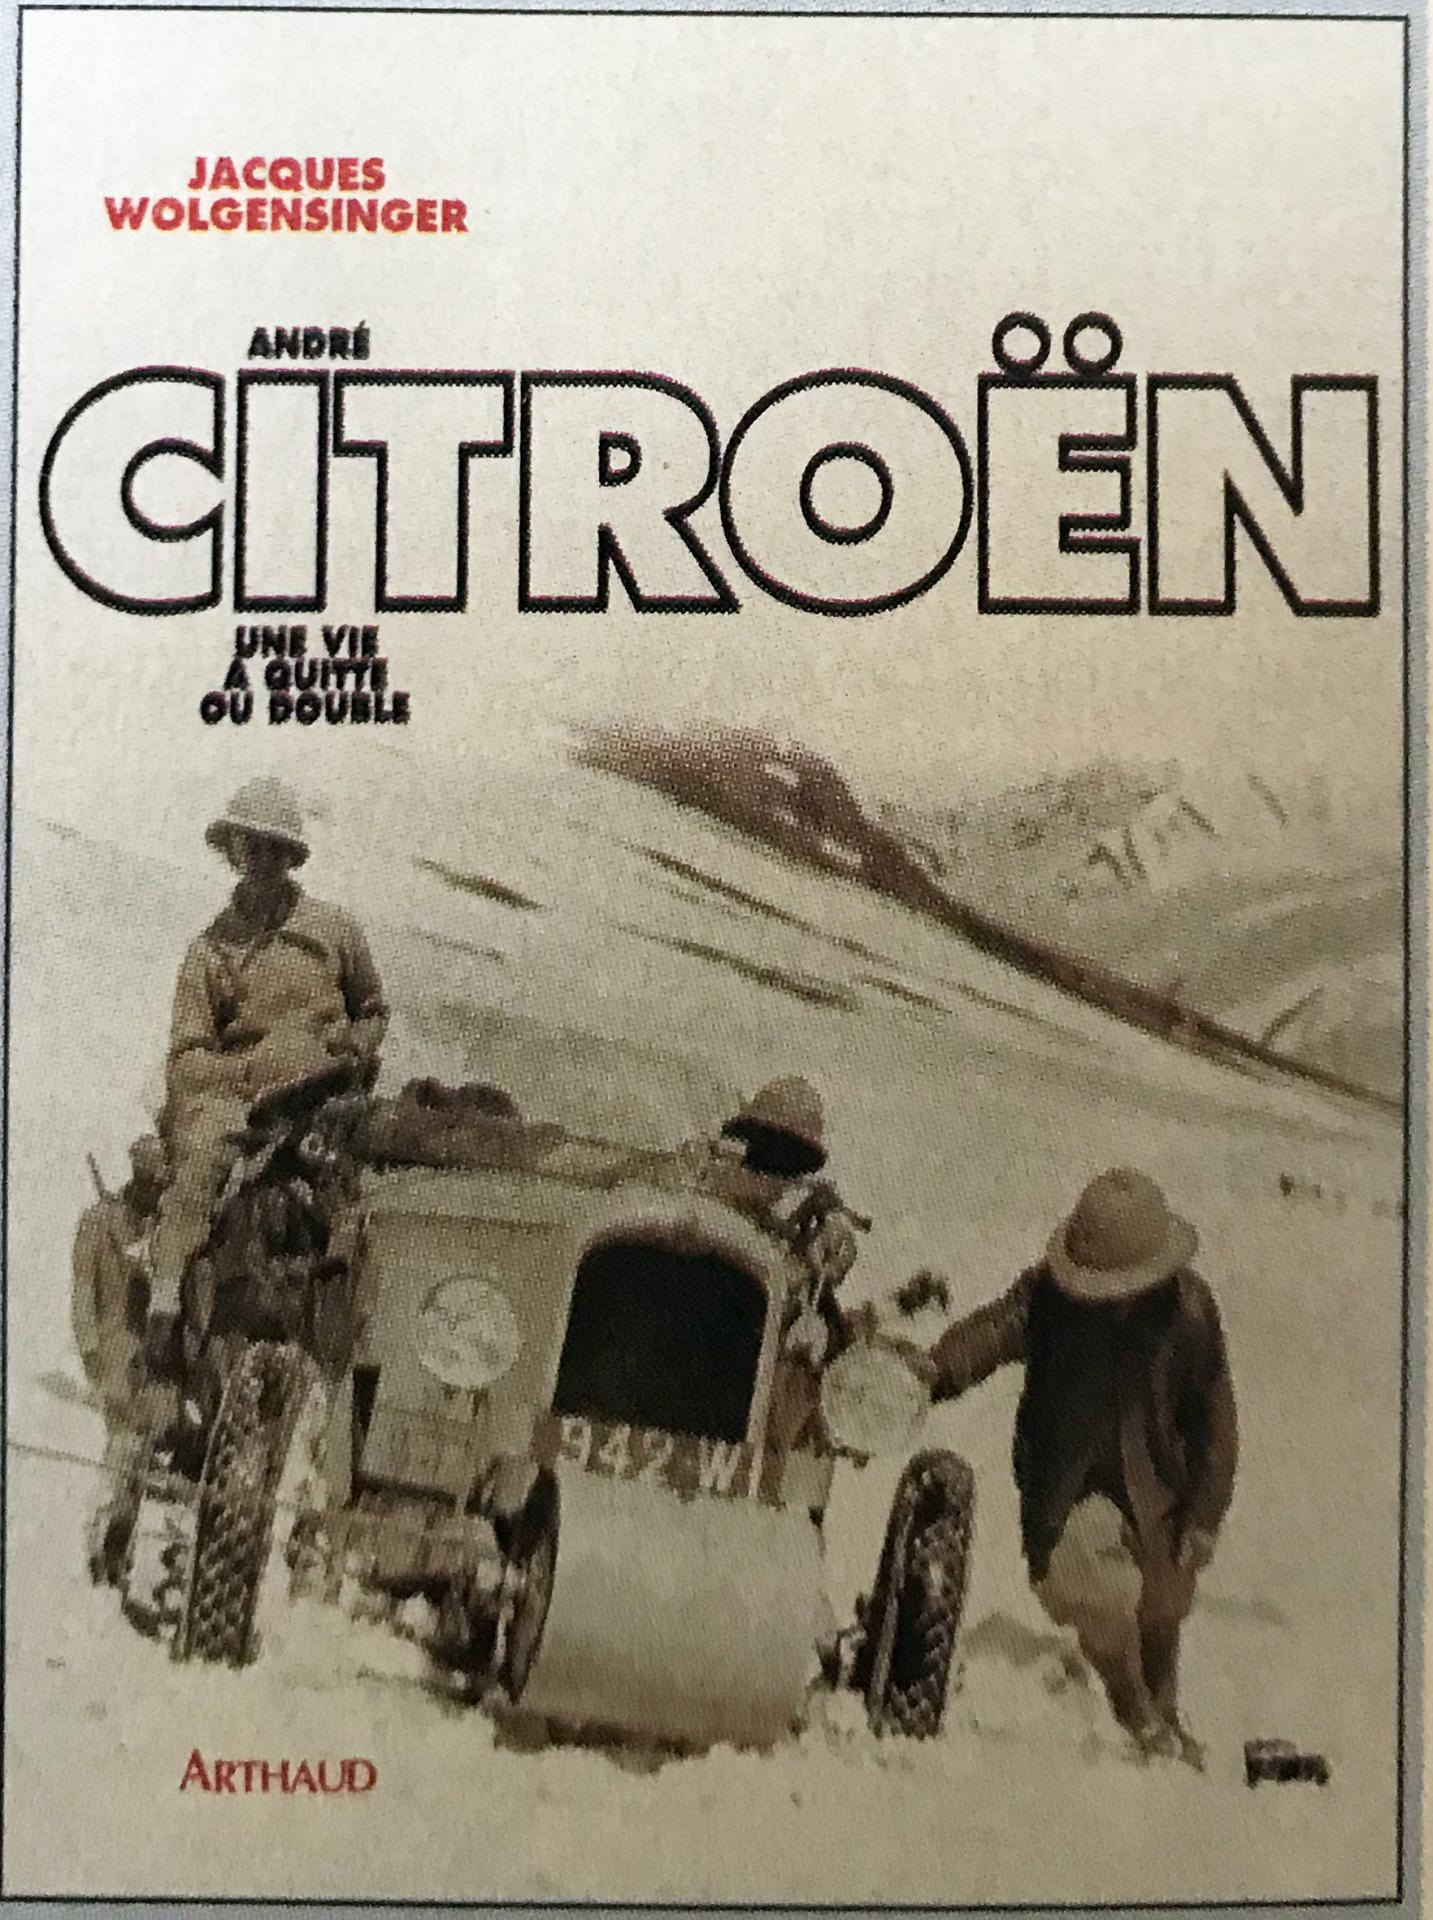 1996 André Citroën - Une vie à quitte ou double